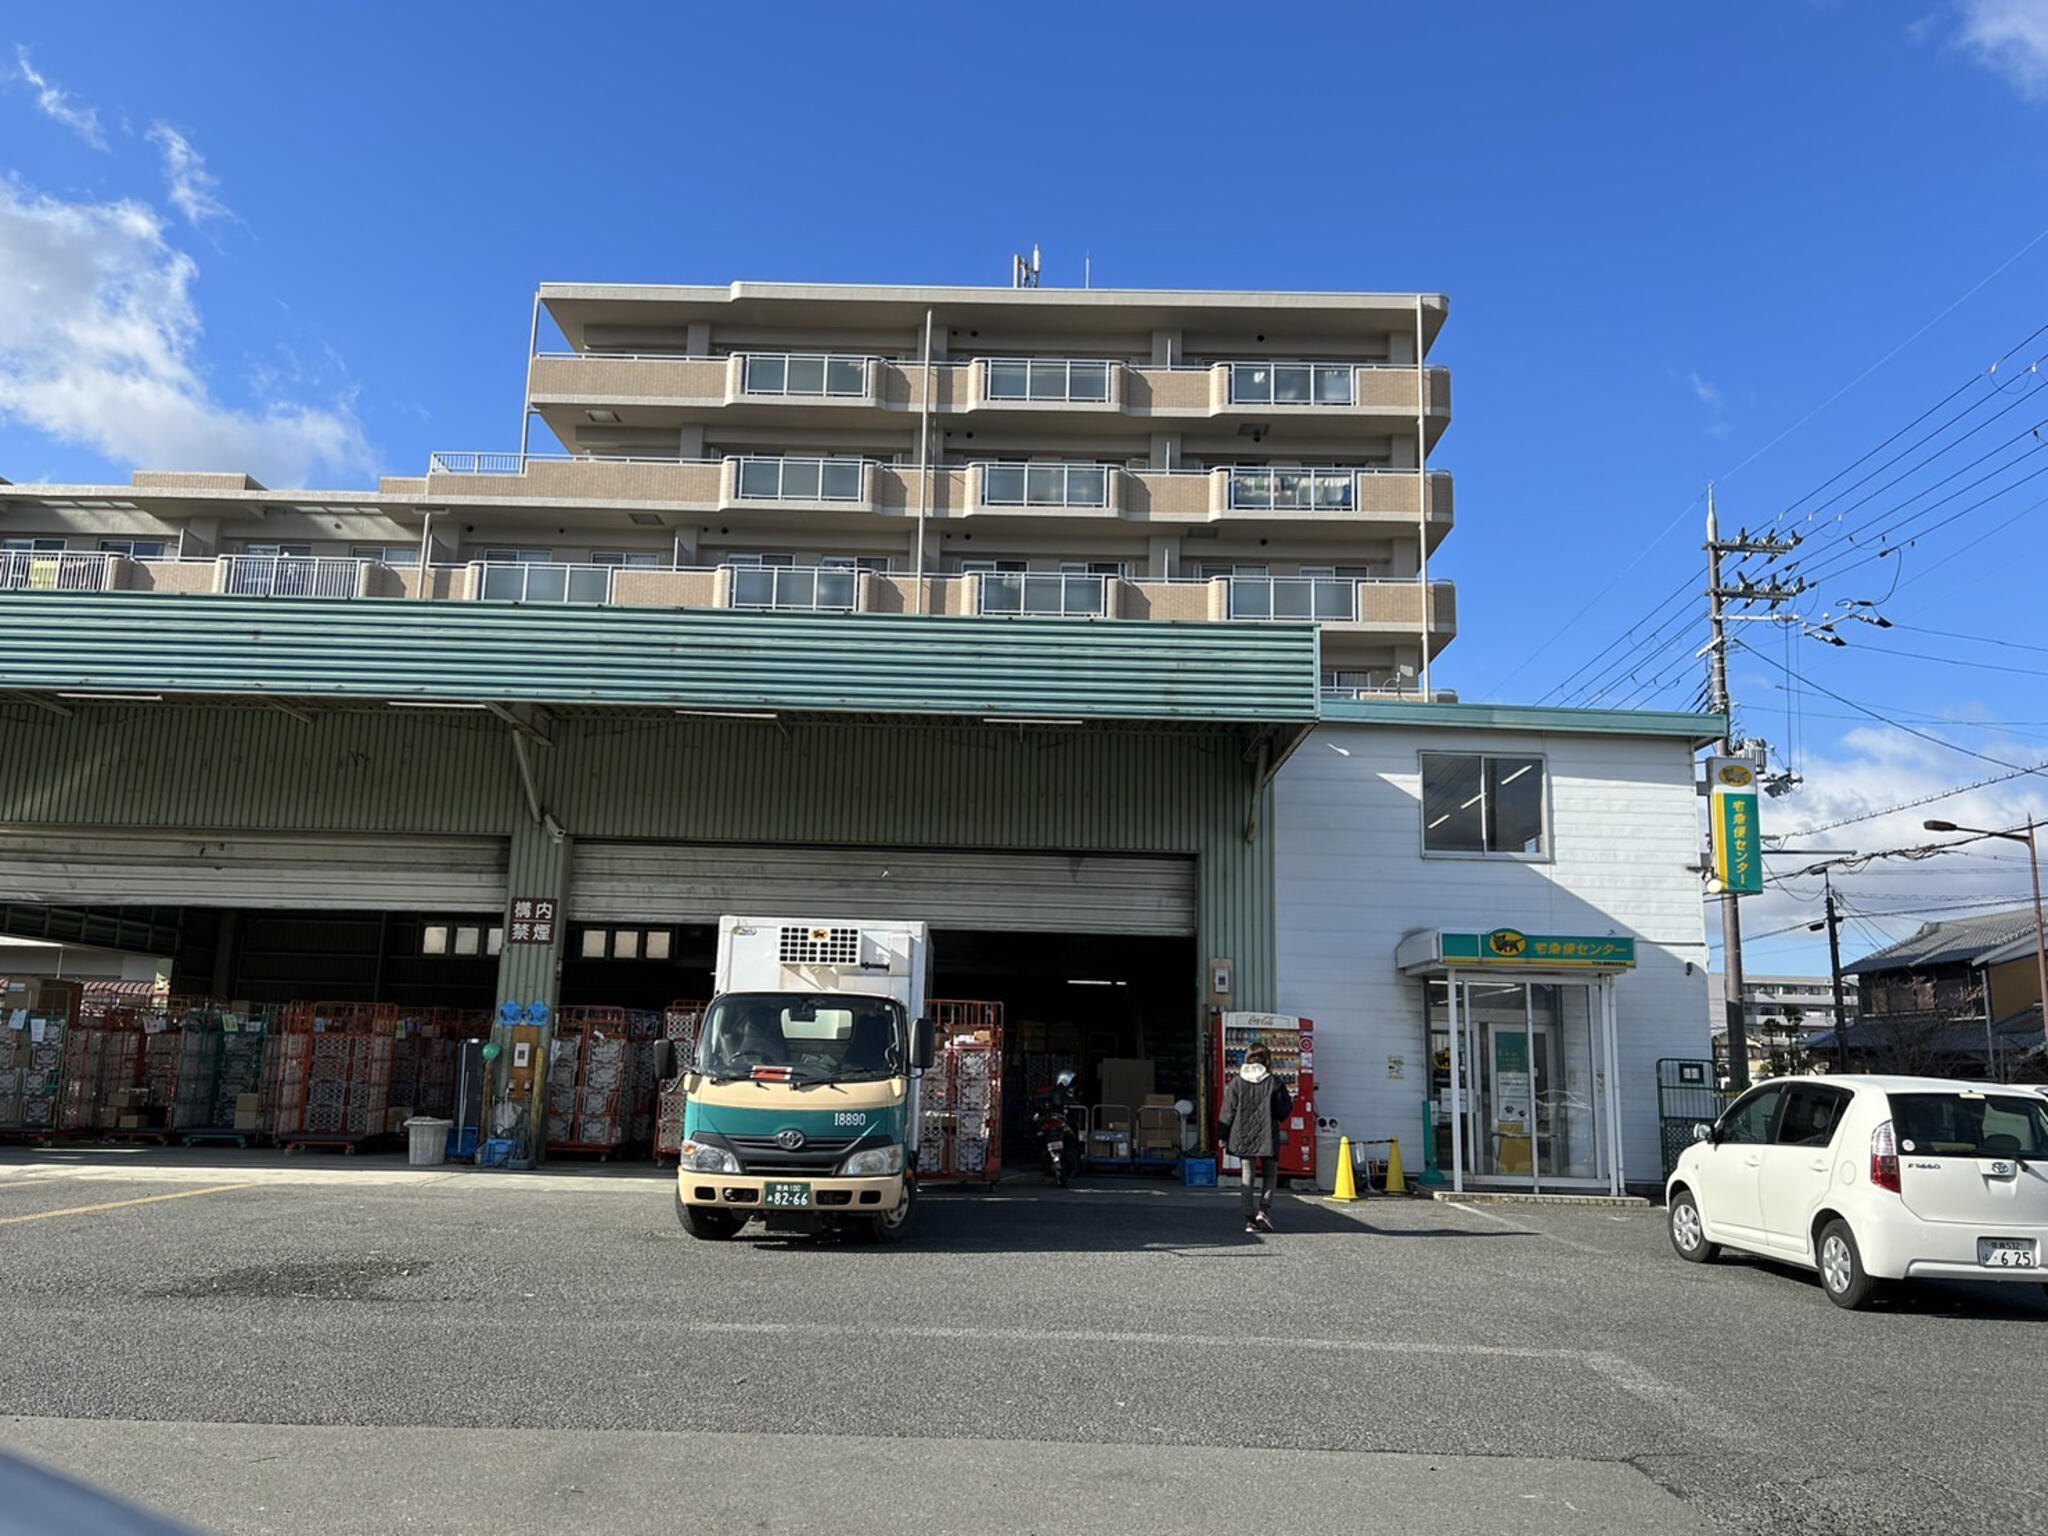 ヤマト運輸 大和高田営業所(柿本)の代表写真1